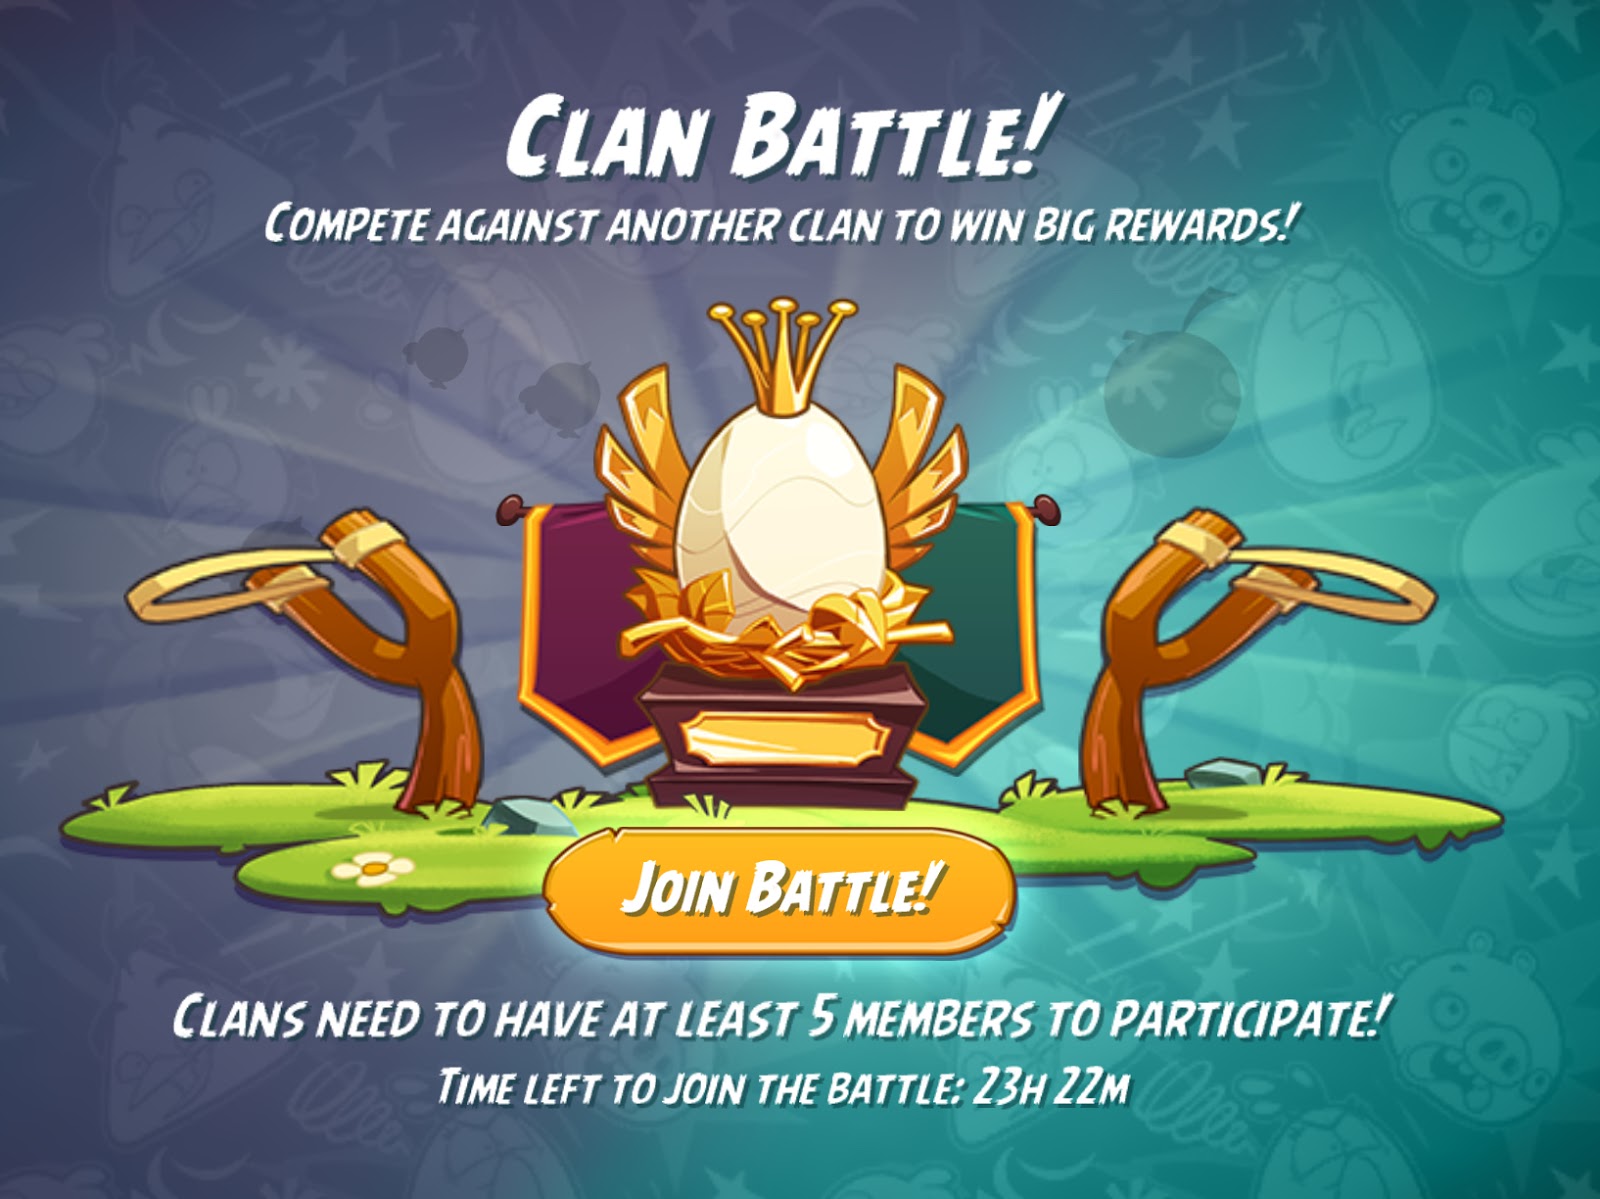 Clan battle